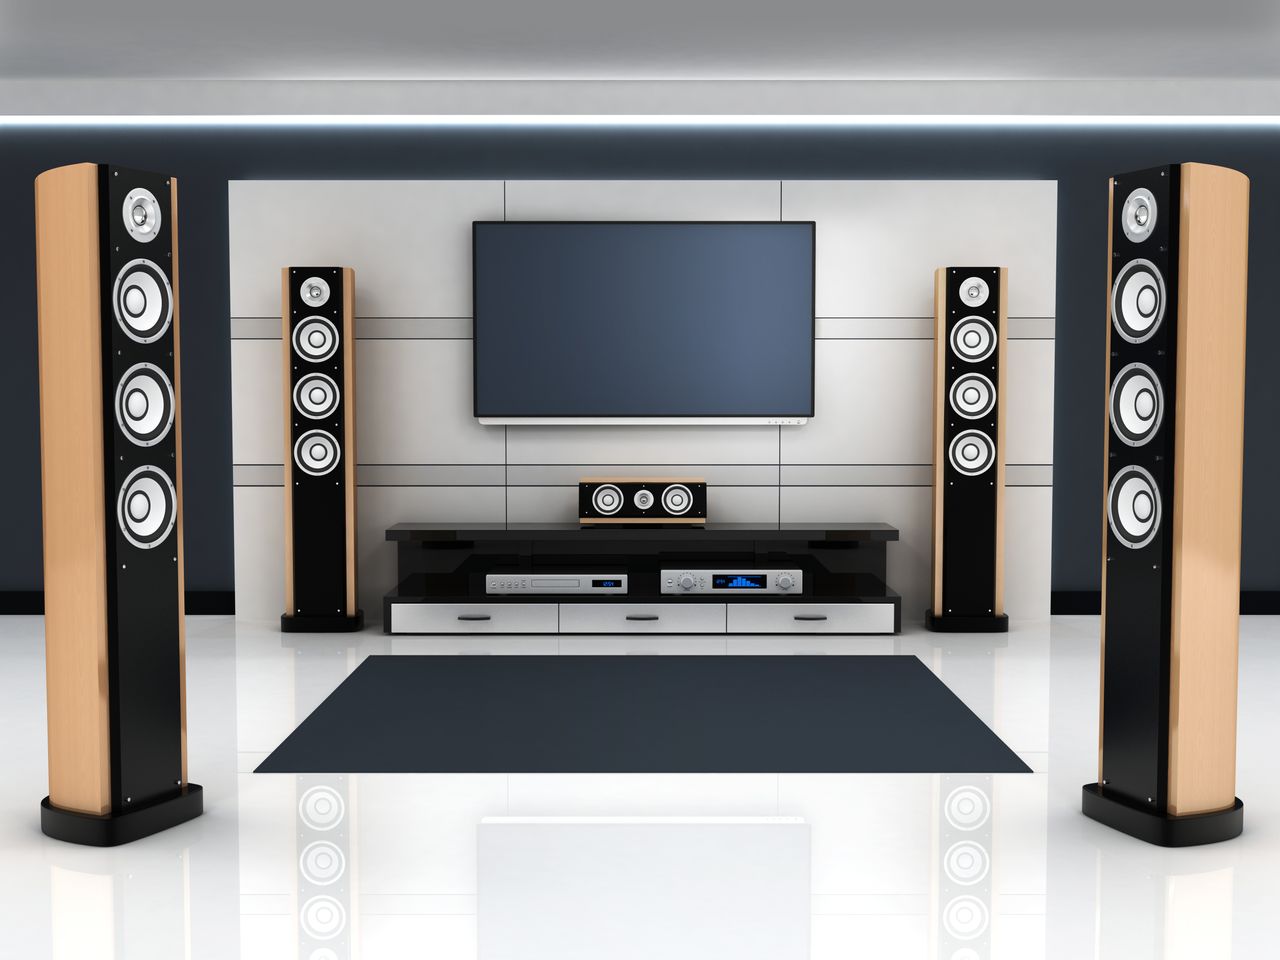 Już wkrótce bezprzewodowe Dolby Atmos wejdzie na nasze salony, fot. Vlad Kochelaevskiy/Shutterstock